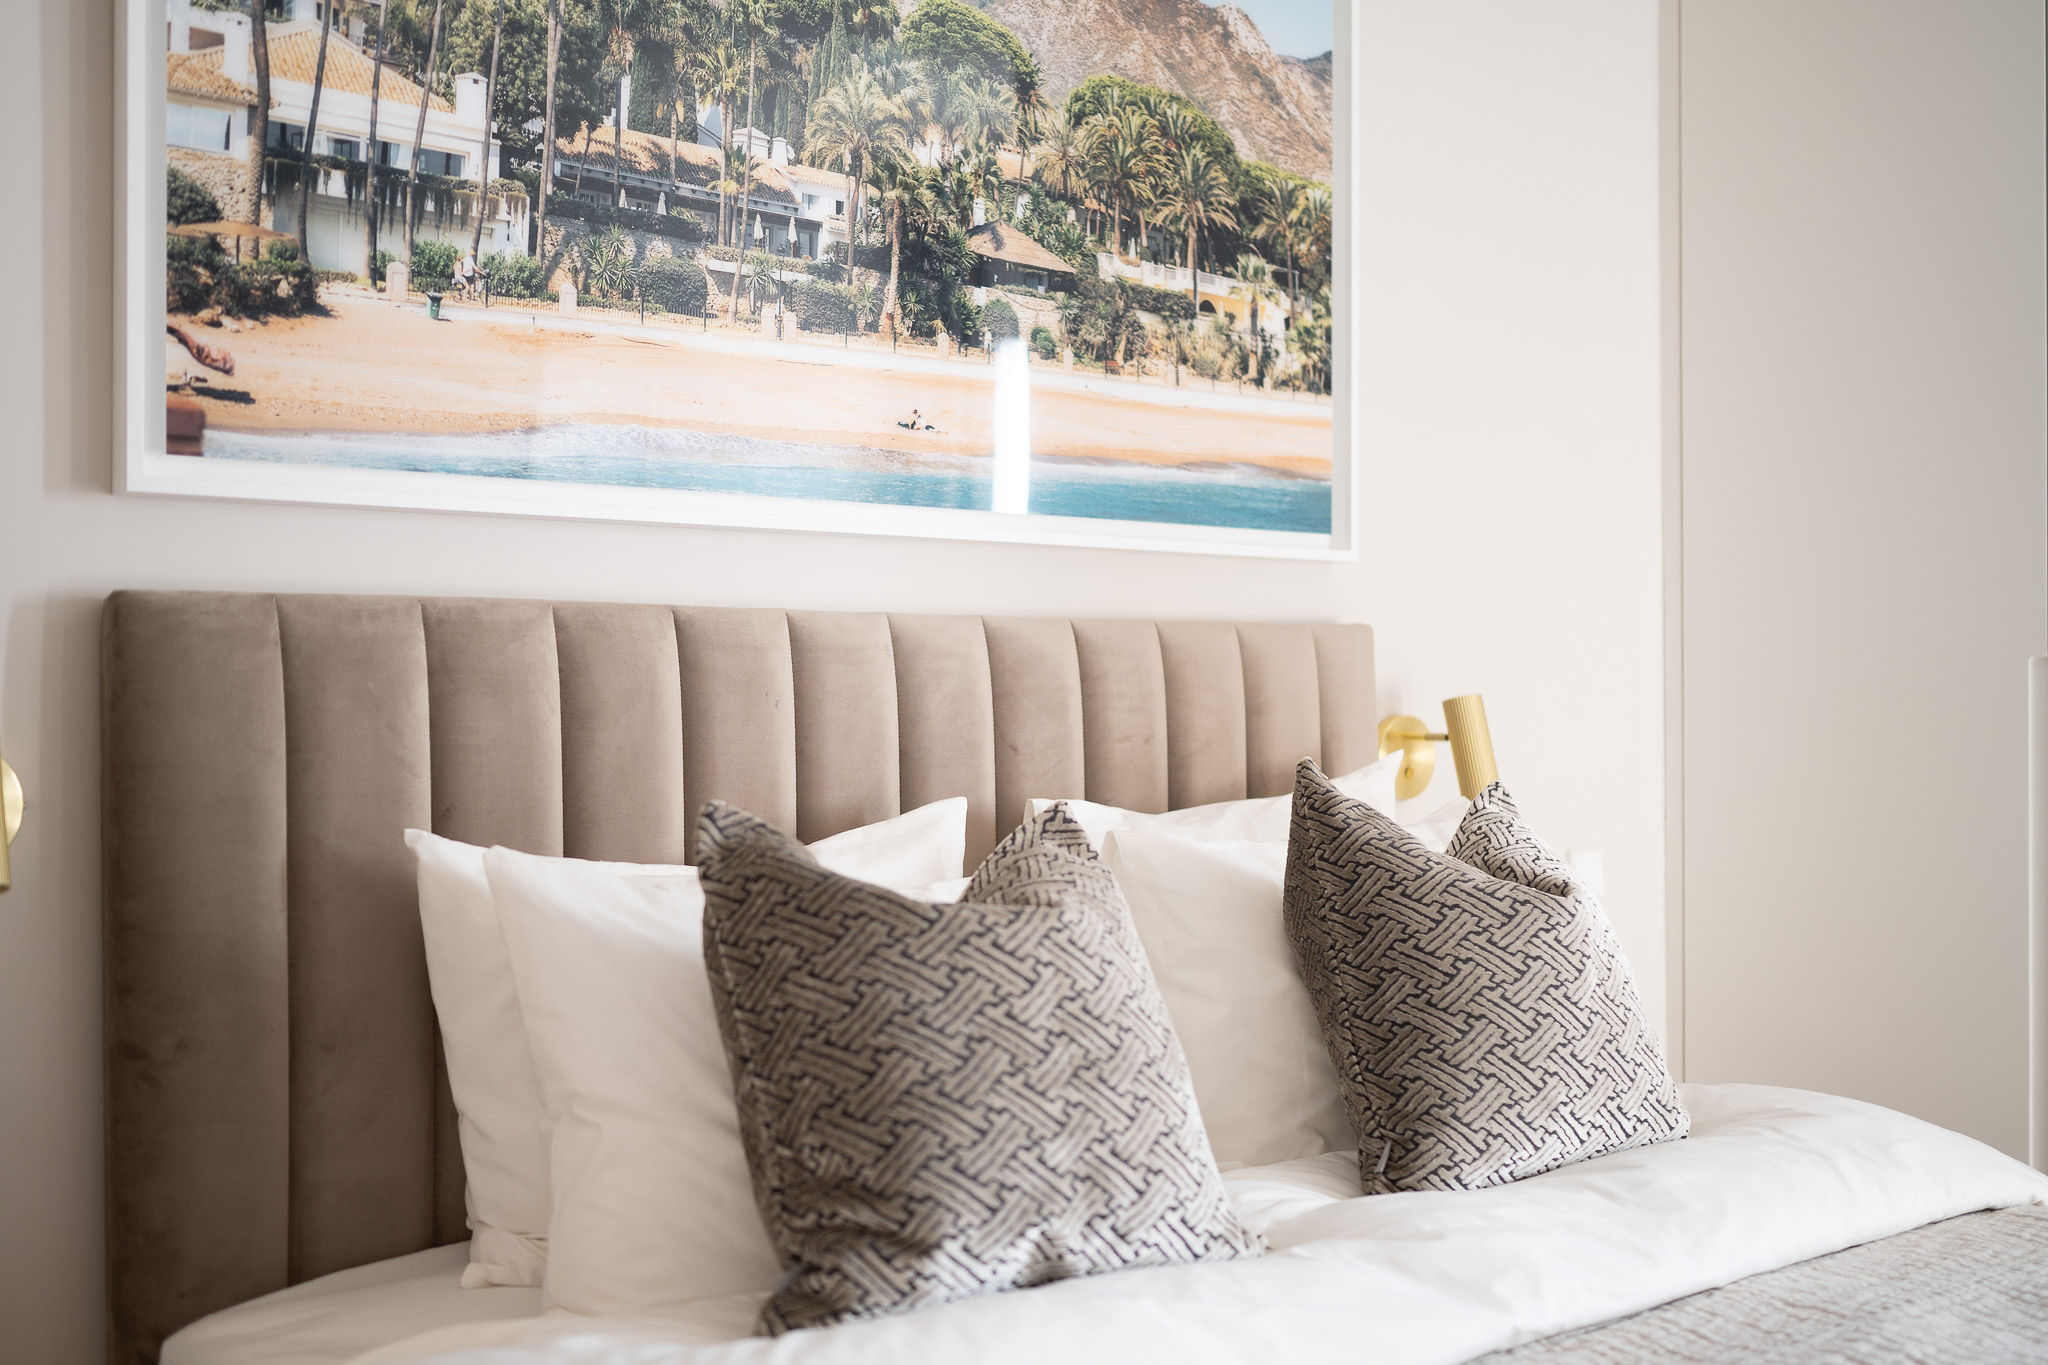 Interior design service by Concept Living Marbella